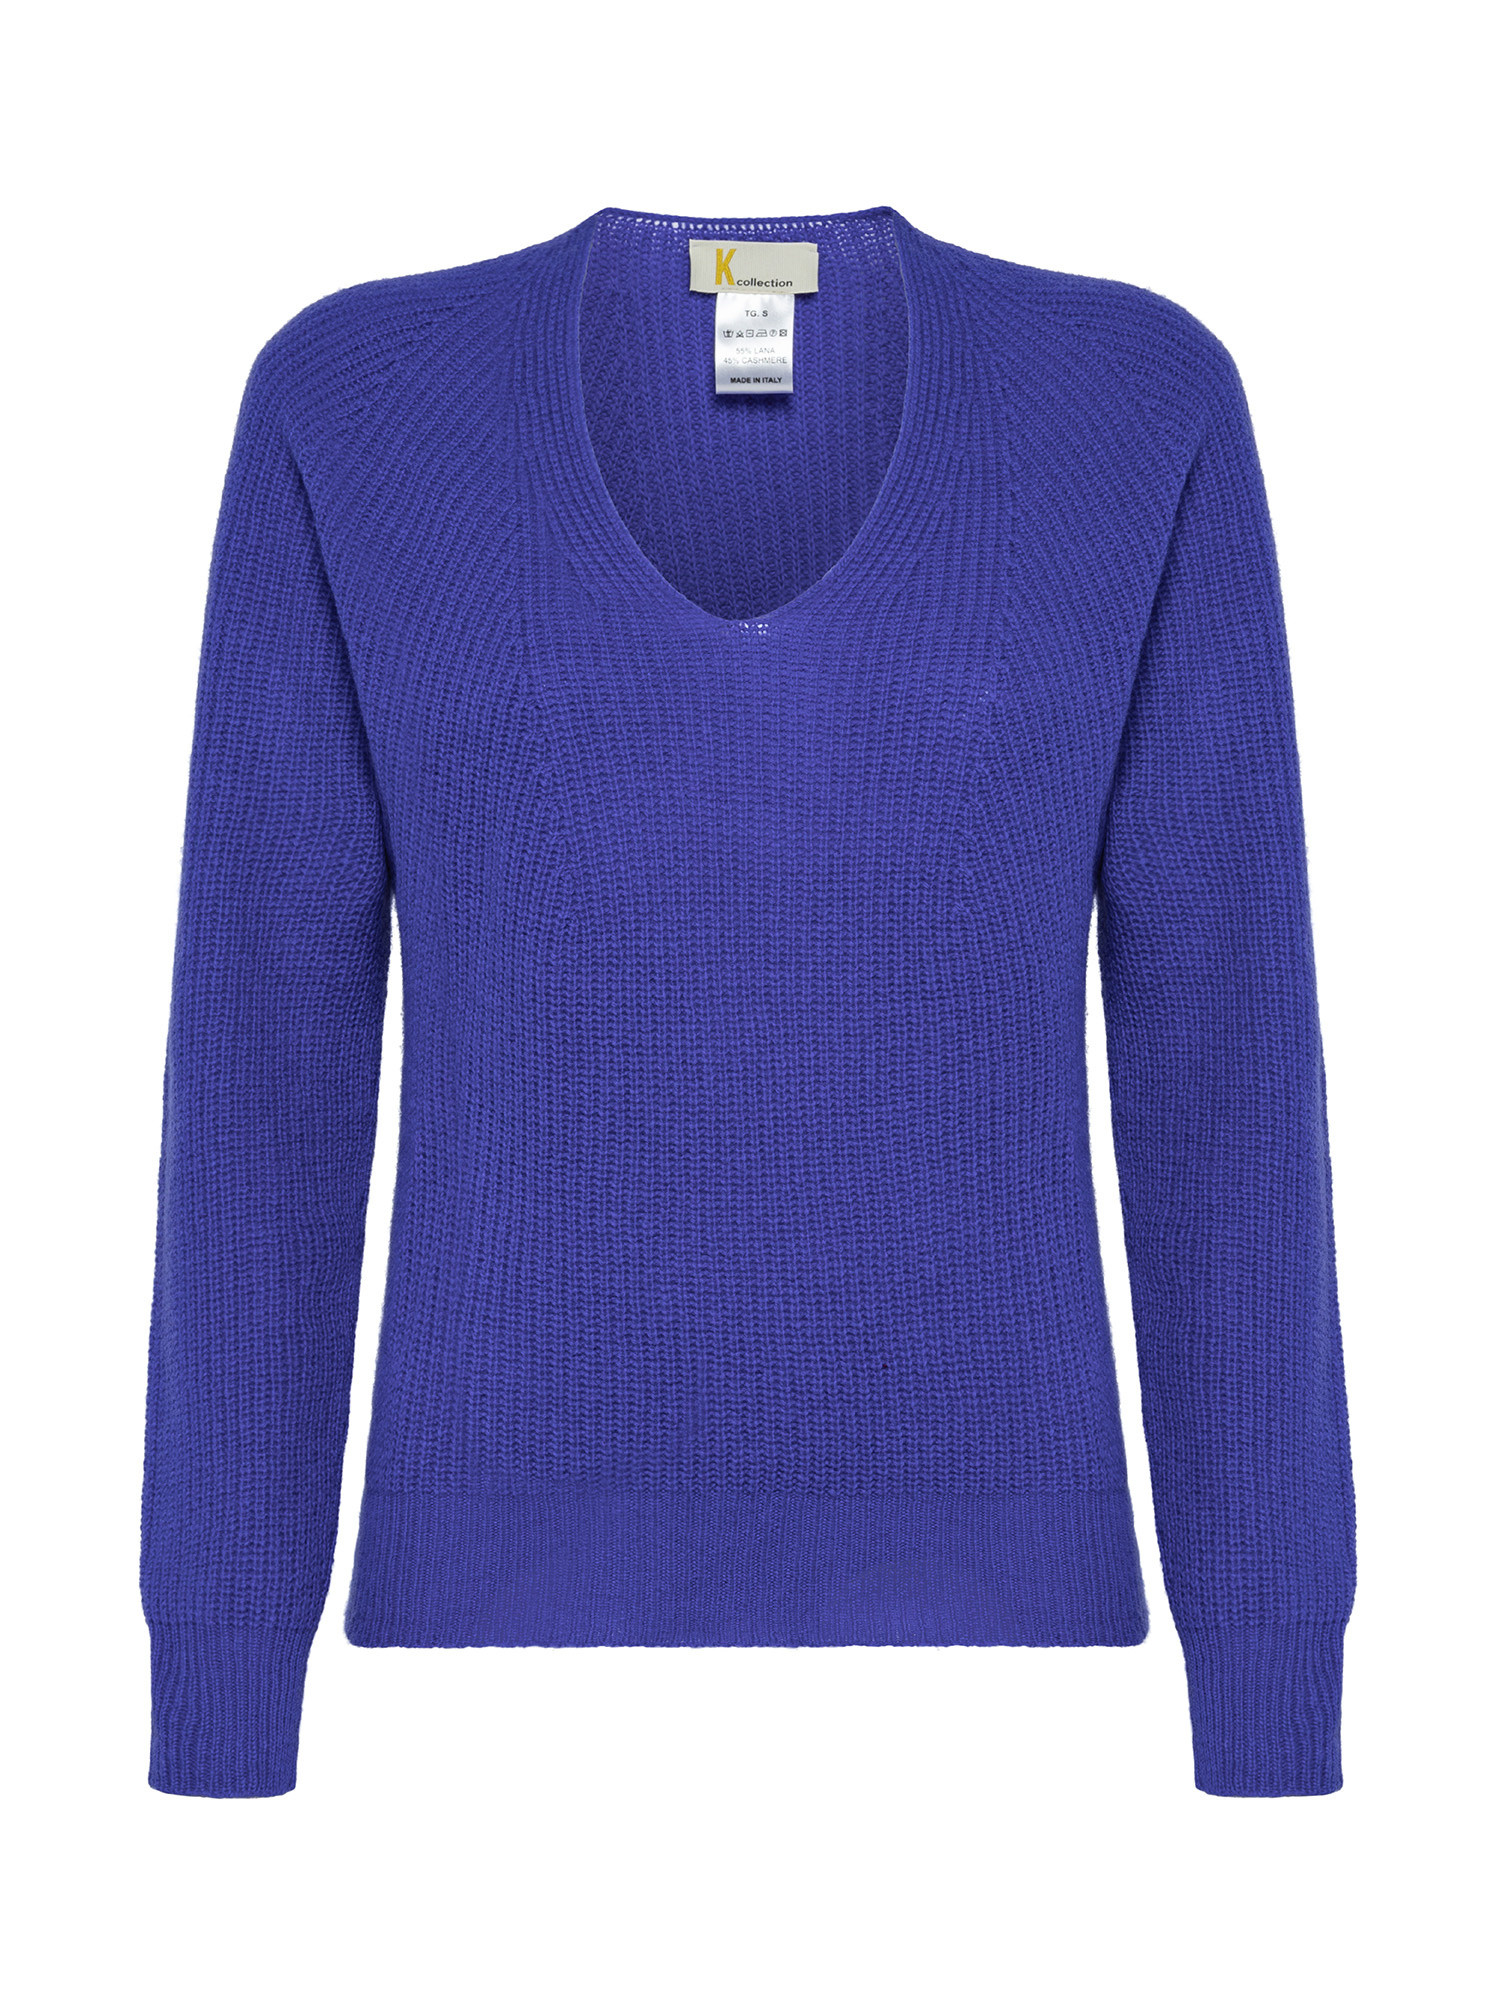 K Collection - V-neck sweater, Royal Blue, large image number 0